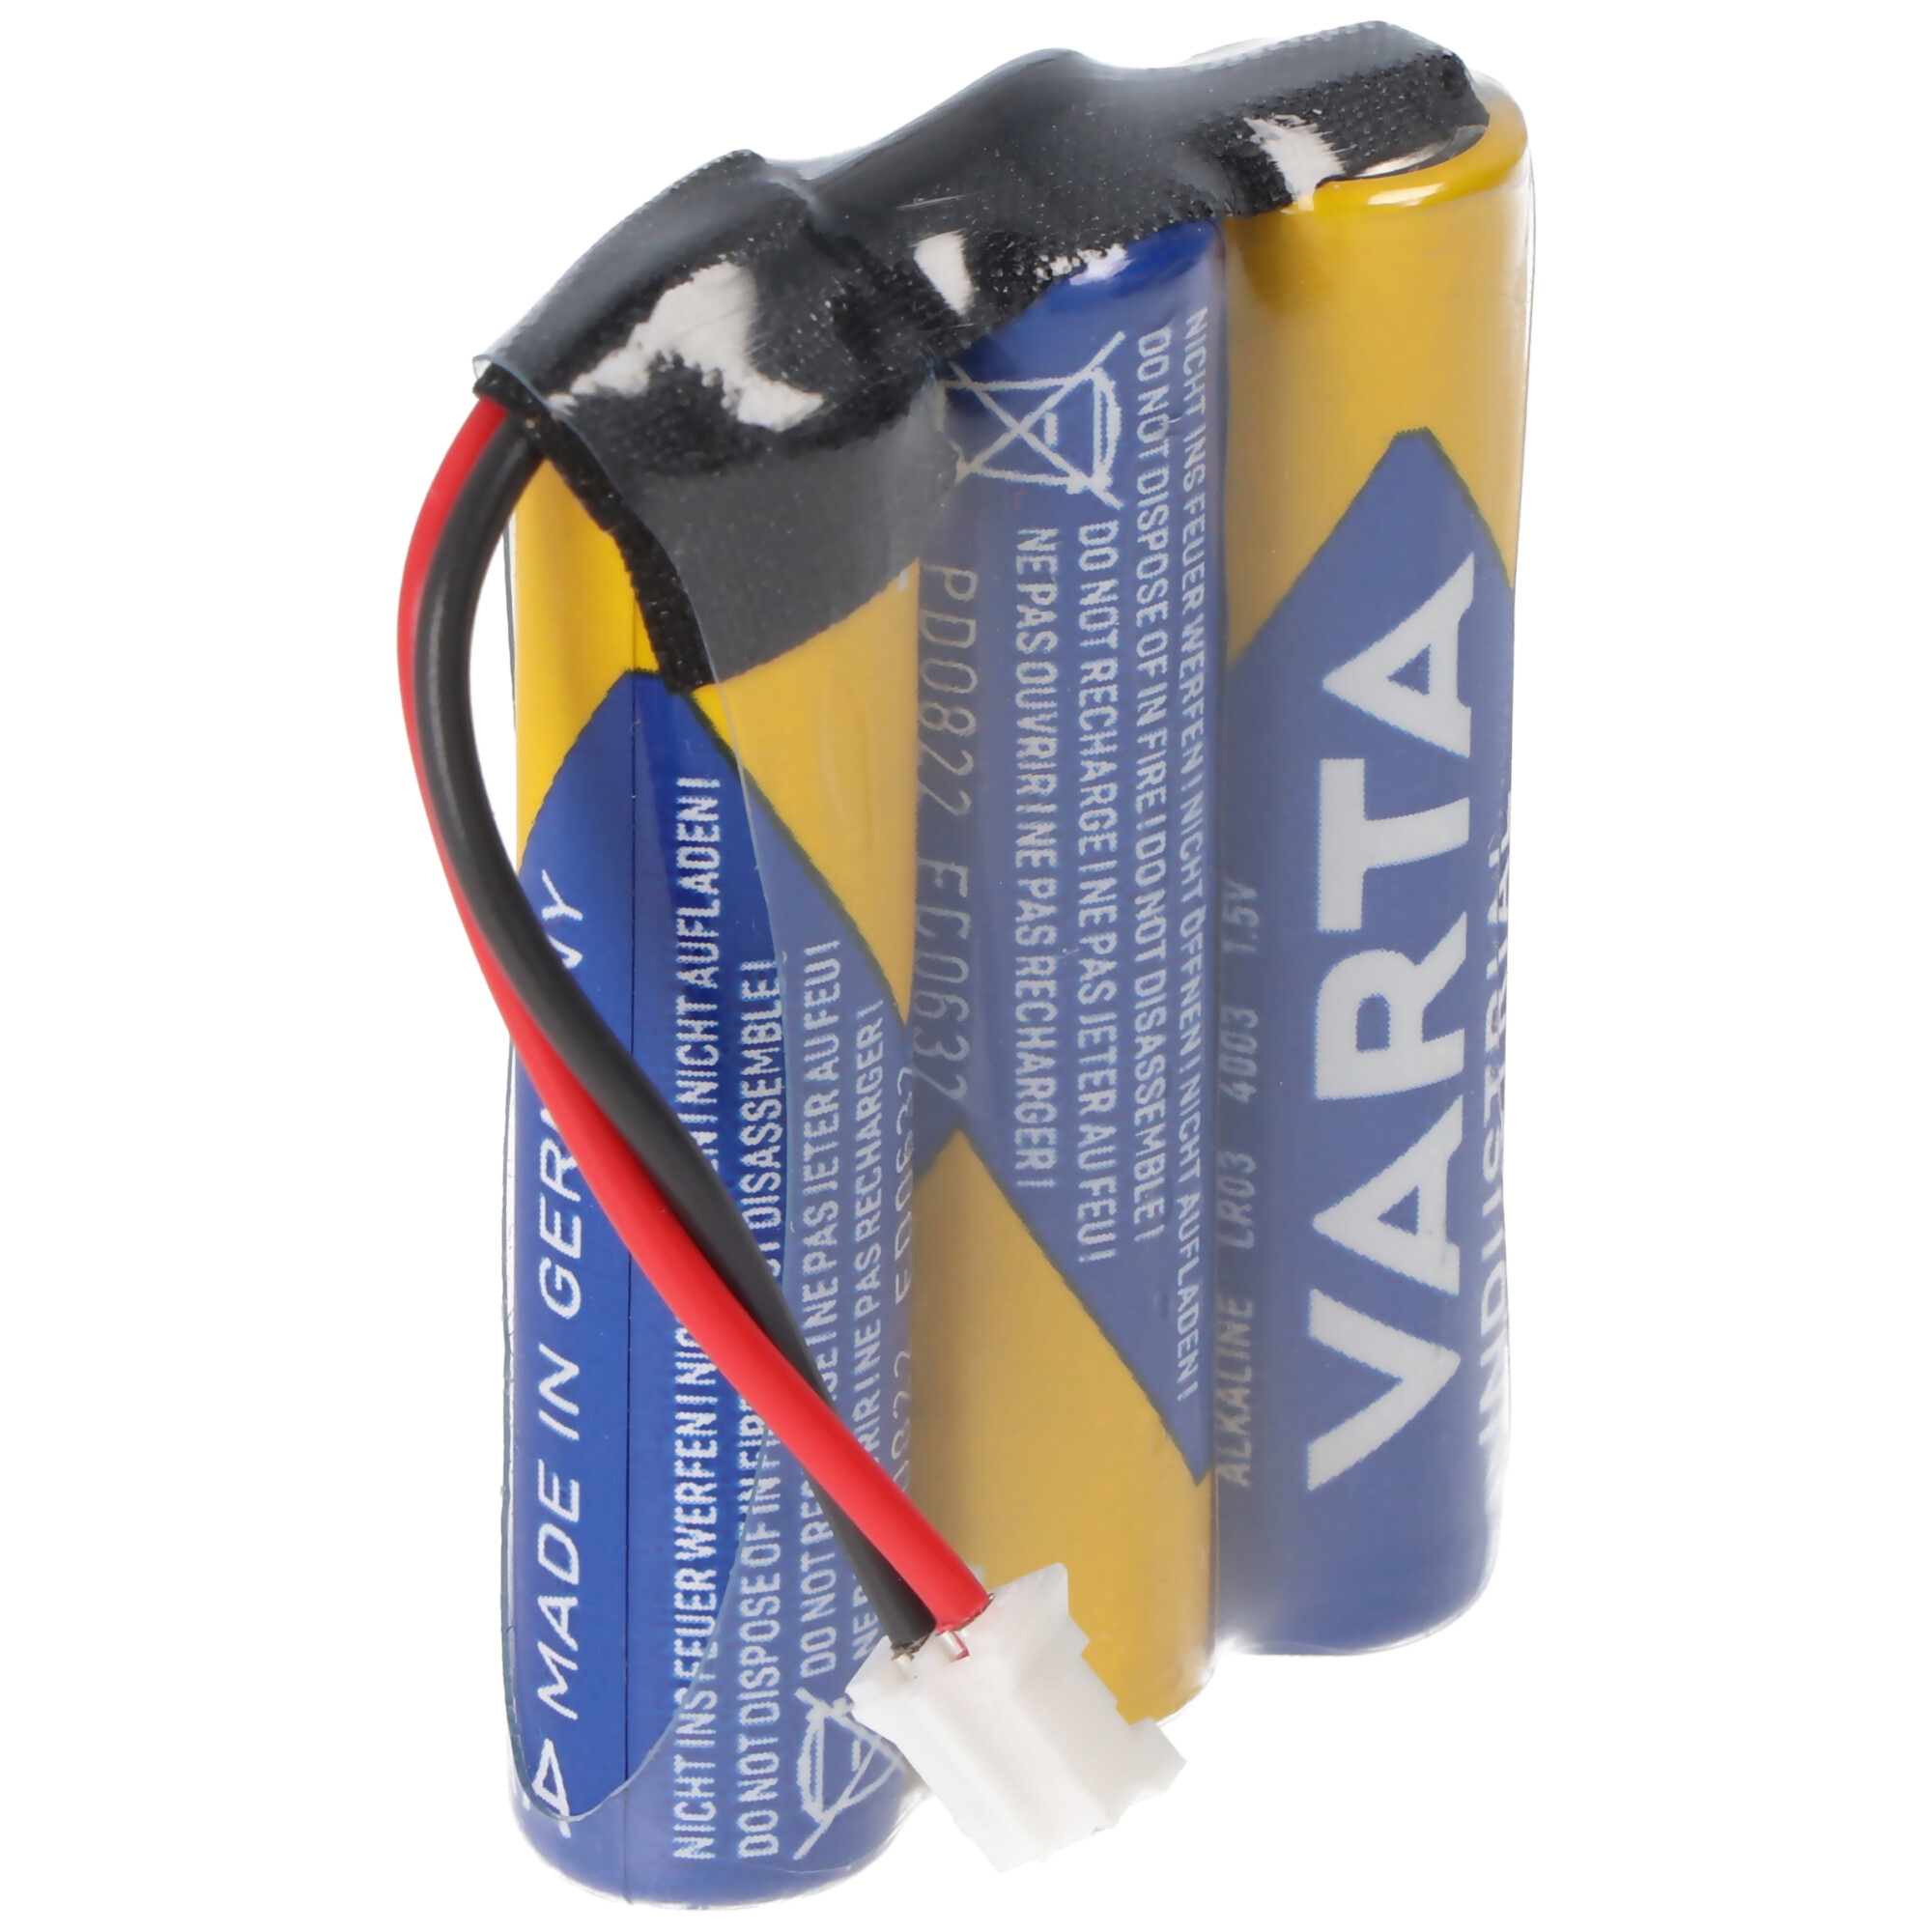 Batteriepack 4,5V F1x3 Micro AAA mit Kabel und Stecker ersetzt Safe-O-Tronic 38400200, Steckertyp PHR-Serie